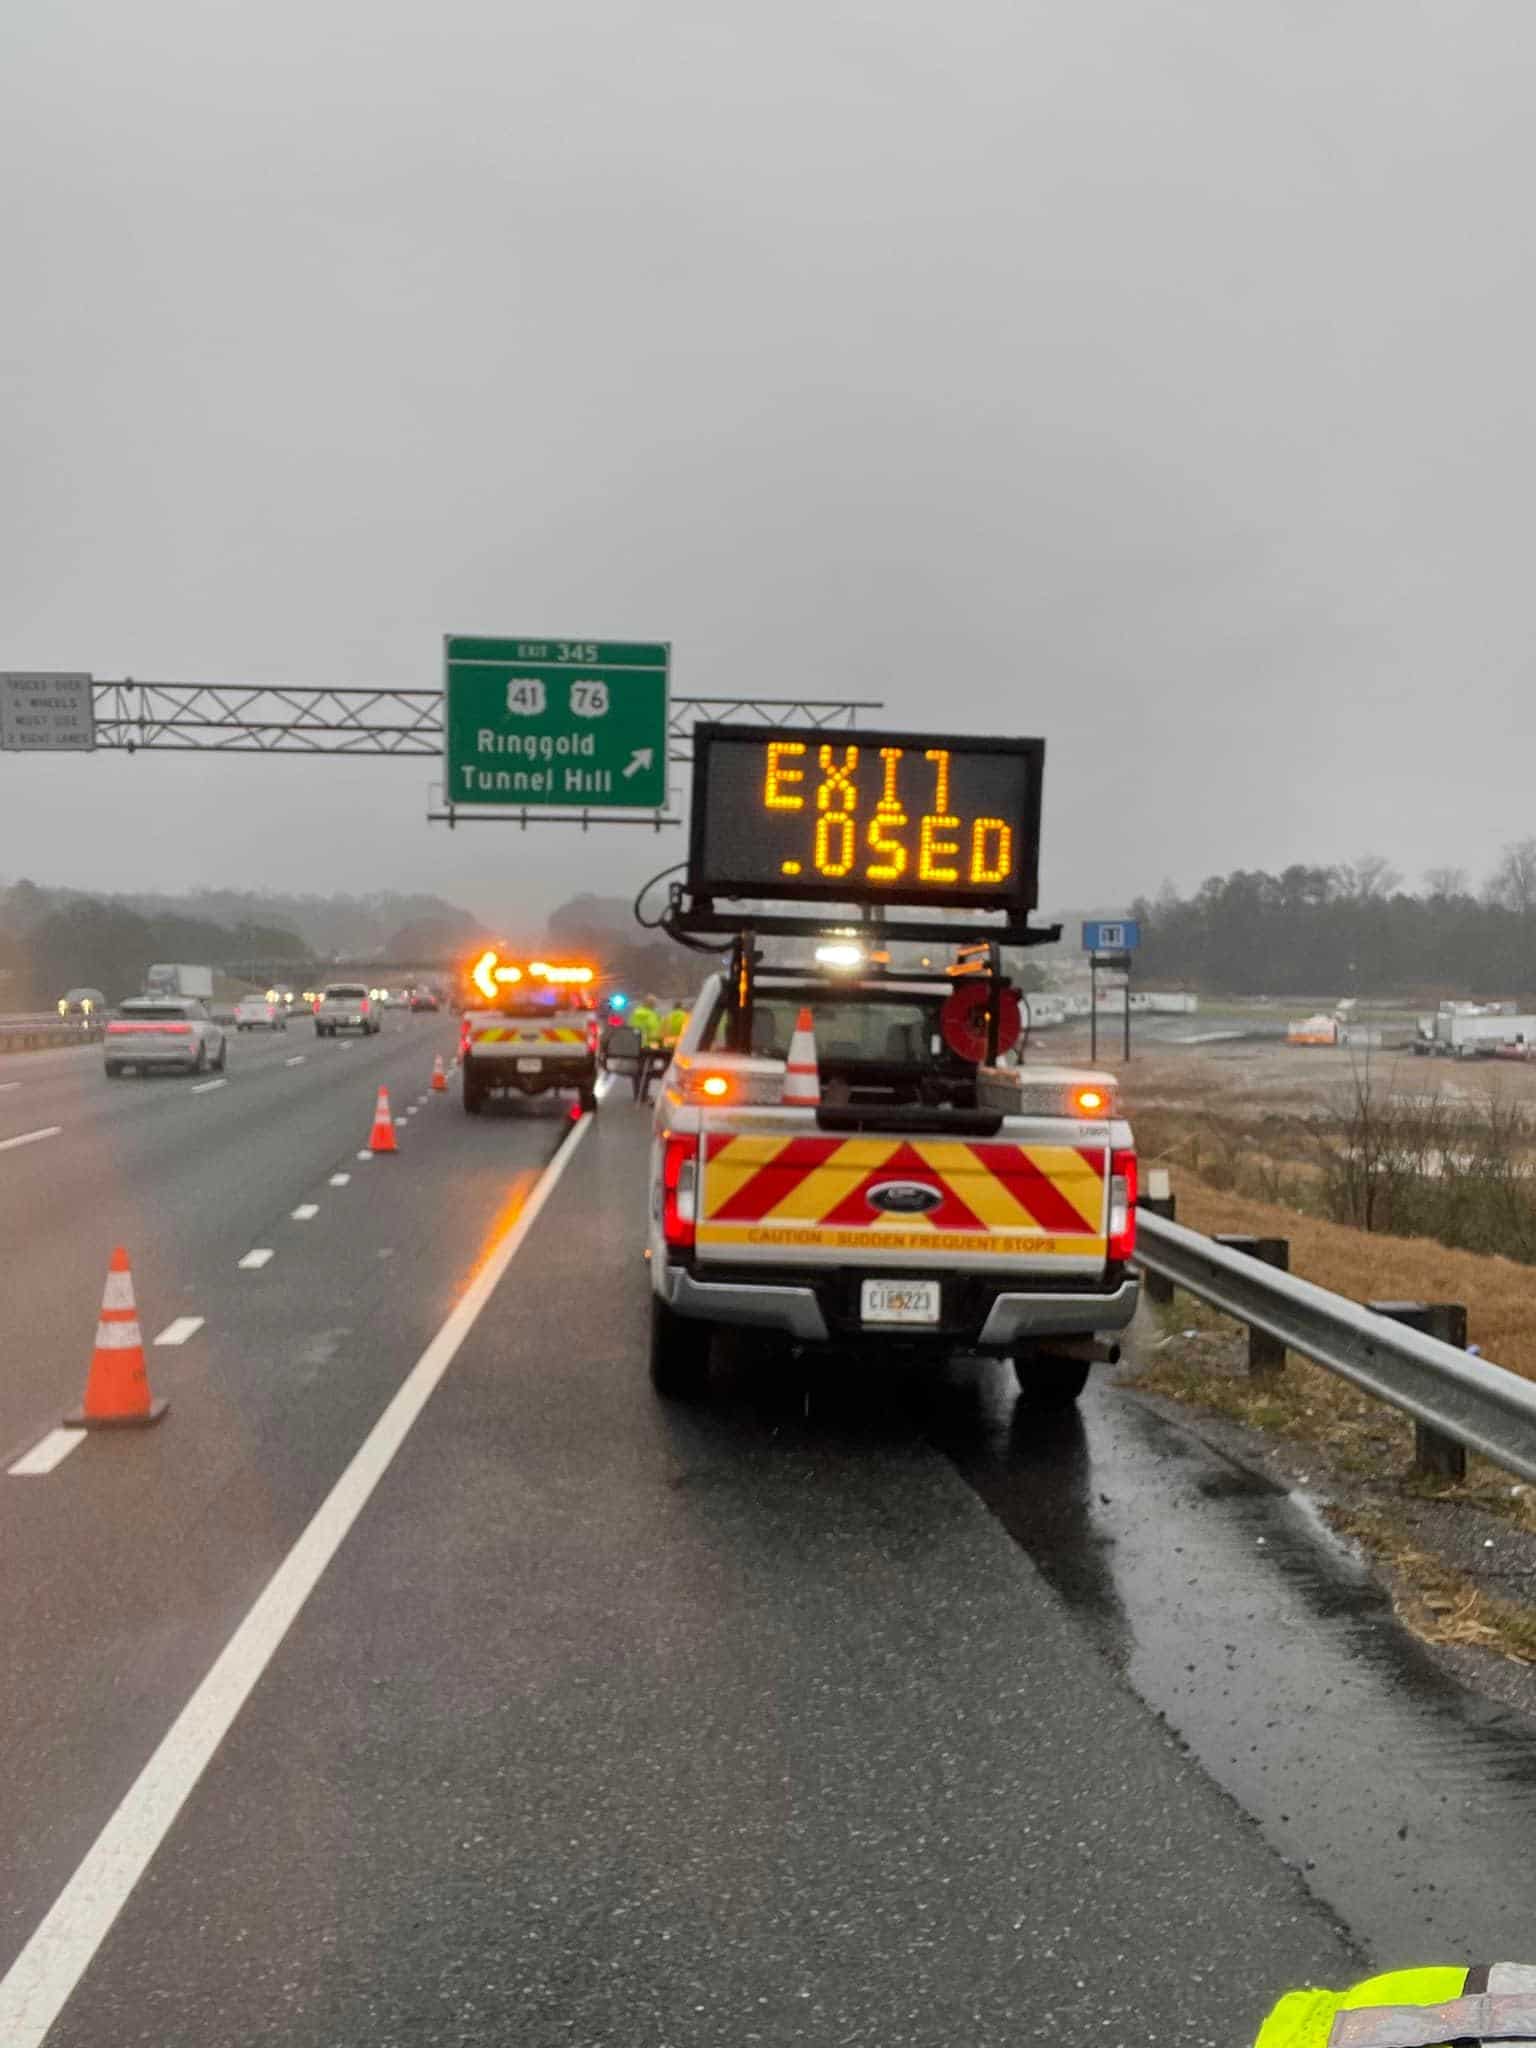 Weekend Lane Closures Expected on Major Georgia Highways